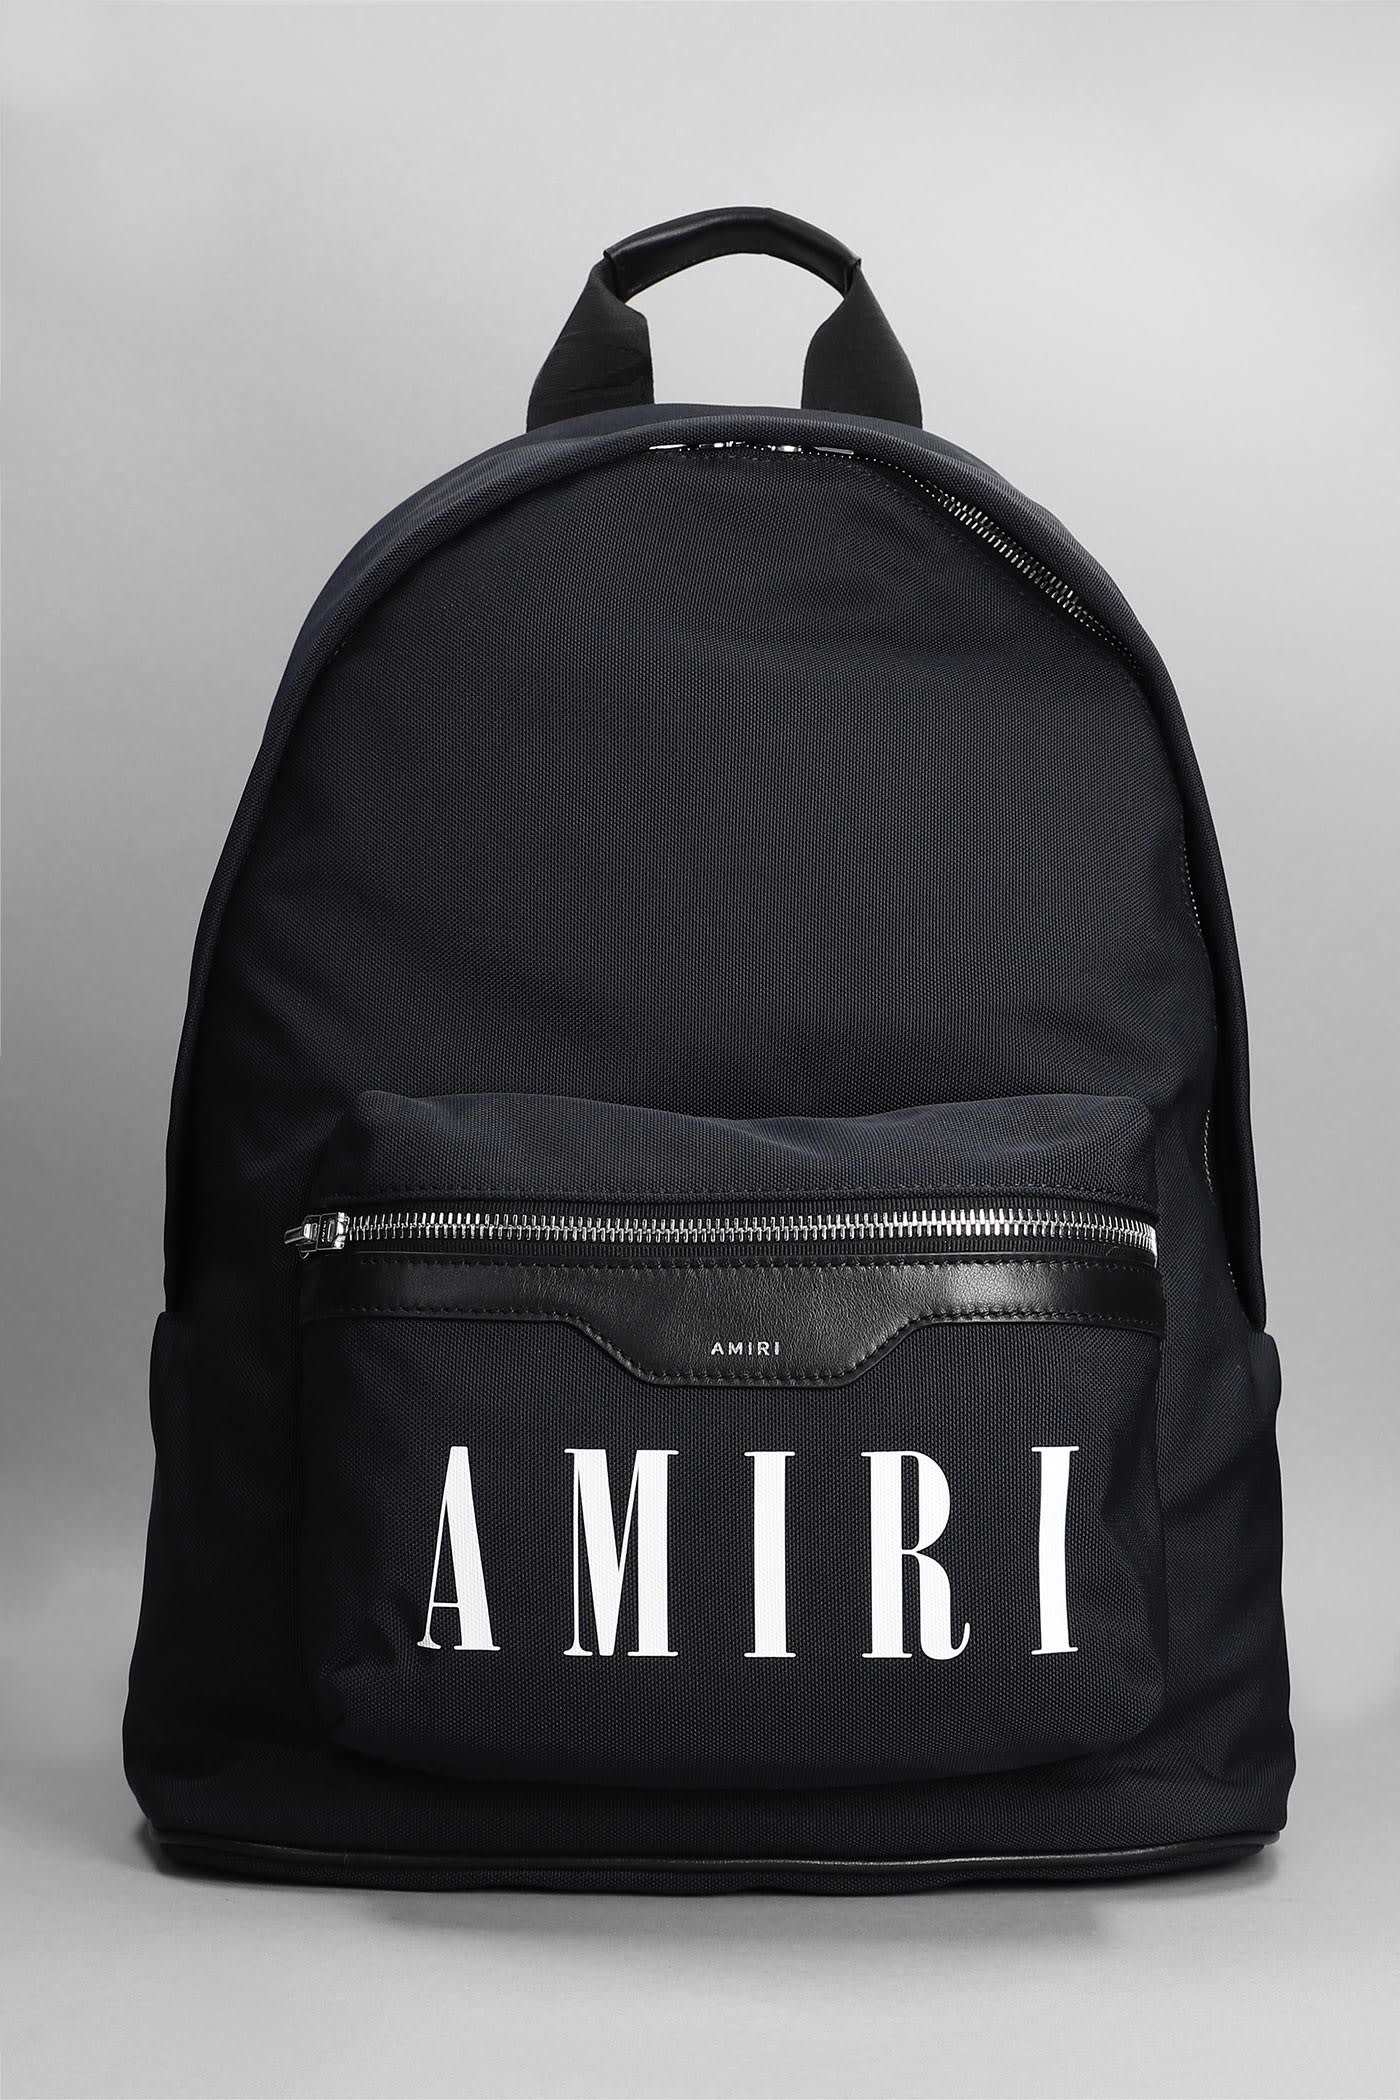 AMIRI Backpack In Black Nylon